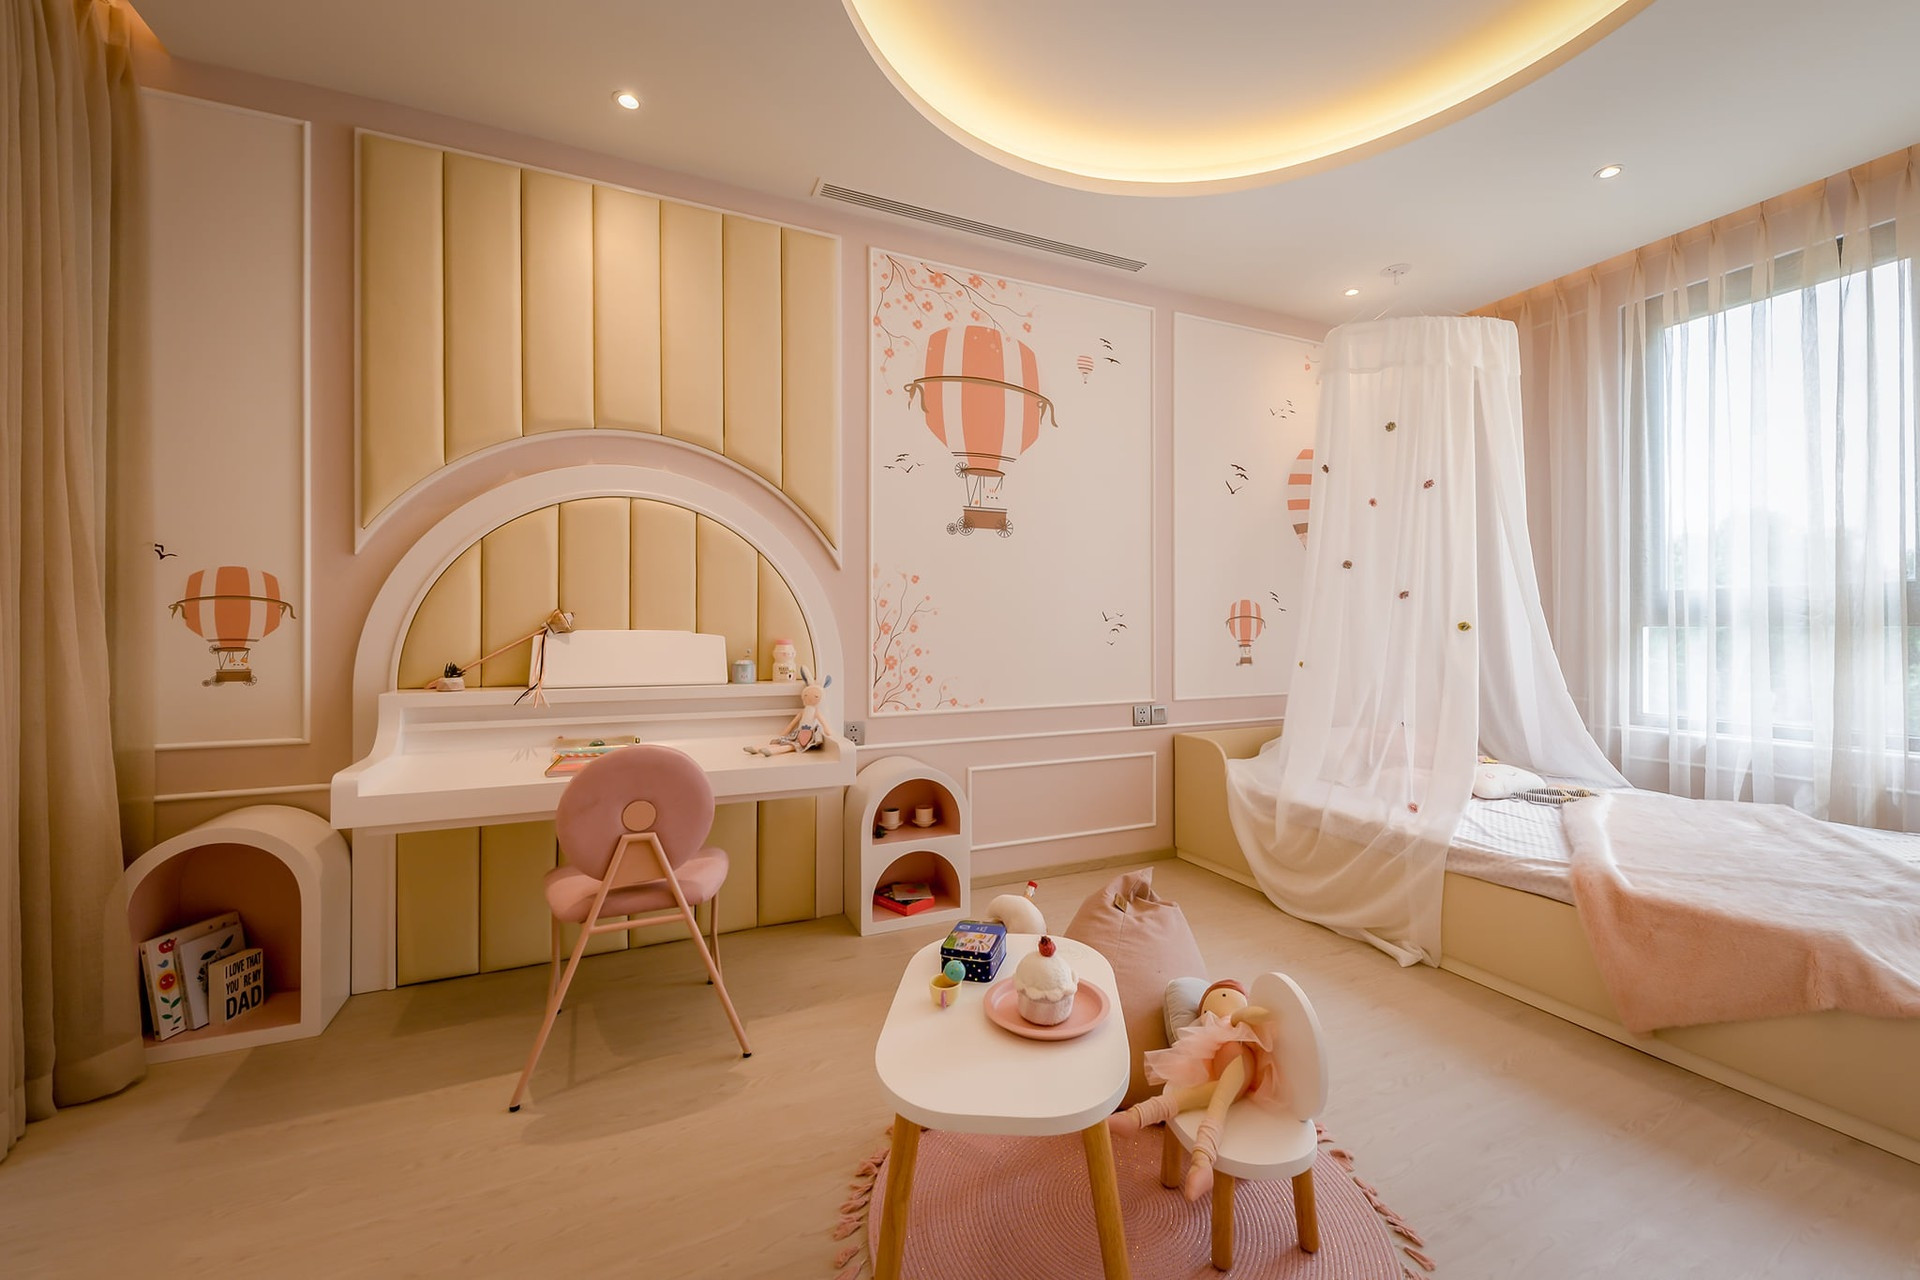 Riêng phòng ngủ bé gái thiết kế với tông màu hồng pastel, kết hợp những đường cong… khiến tổng thể không gian mềm mại, dễ thương.